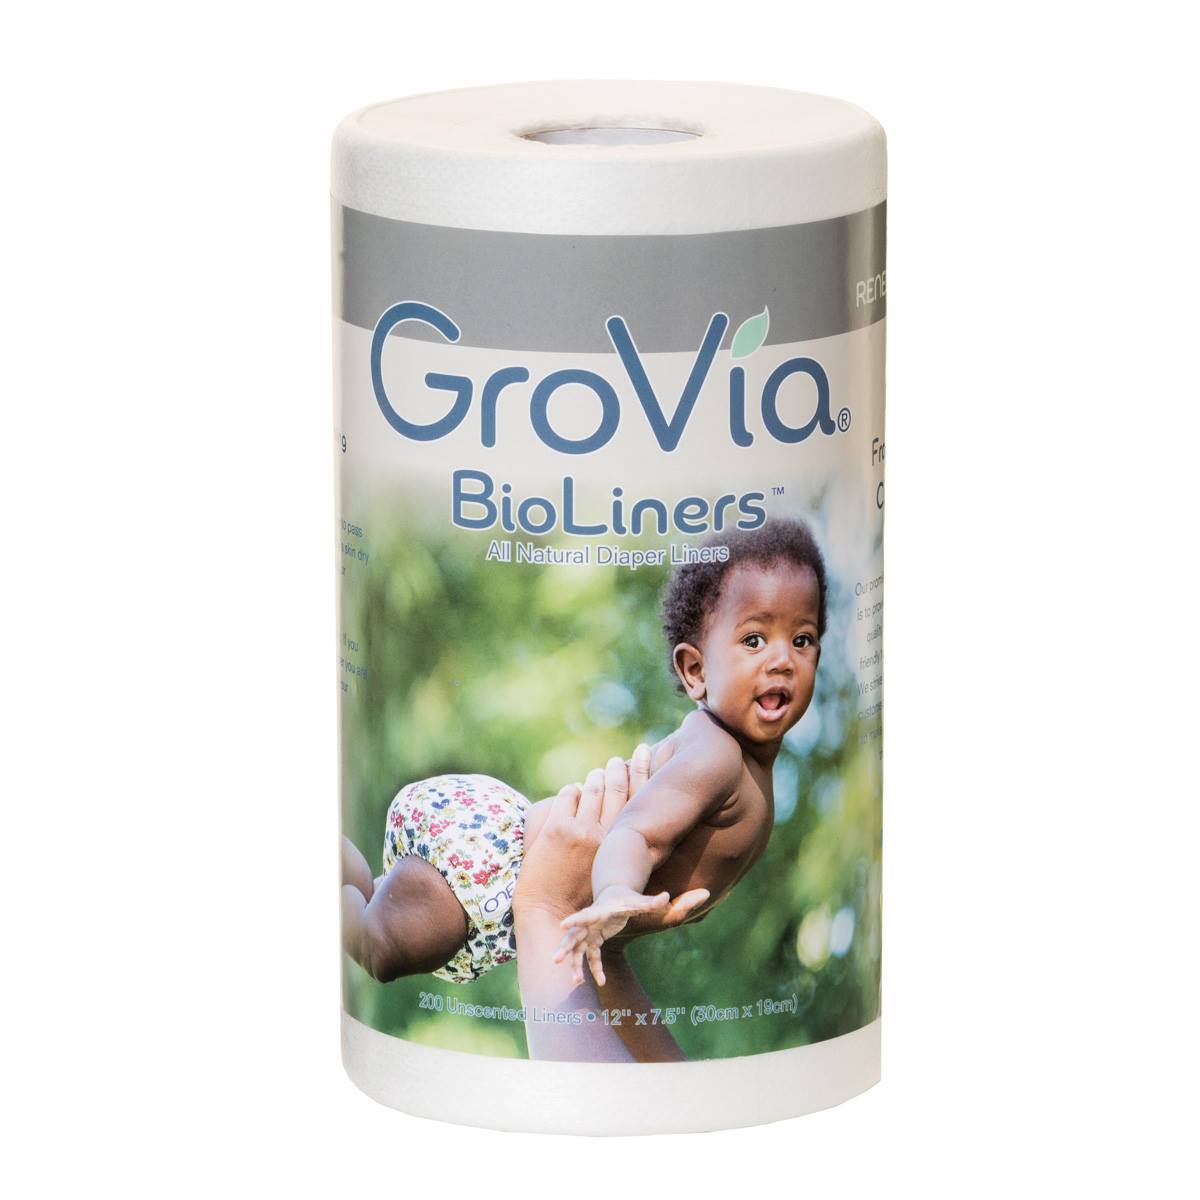 แผ่นรองผ้าอ้อมดักอุจจาระเด็กเล็ก GroVia 'Plastic Free' Bioliners แบบใช้แล้วทิ้งสามารถย่อยสลายได้